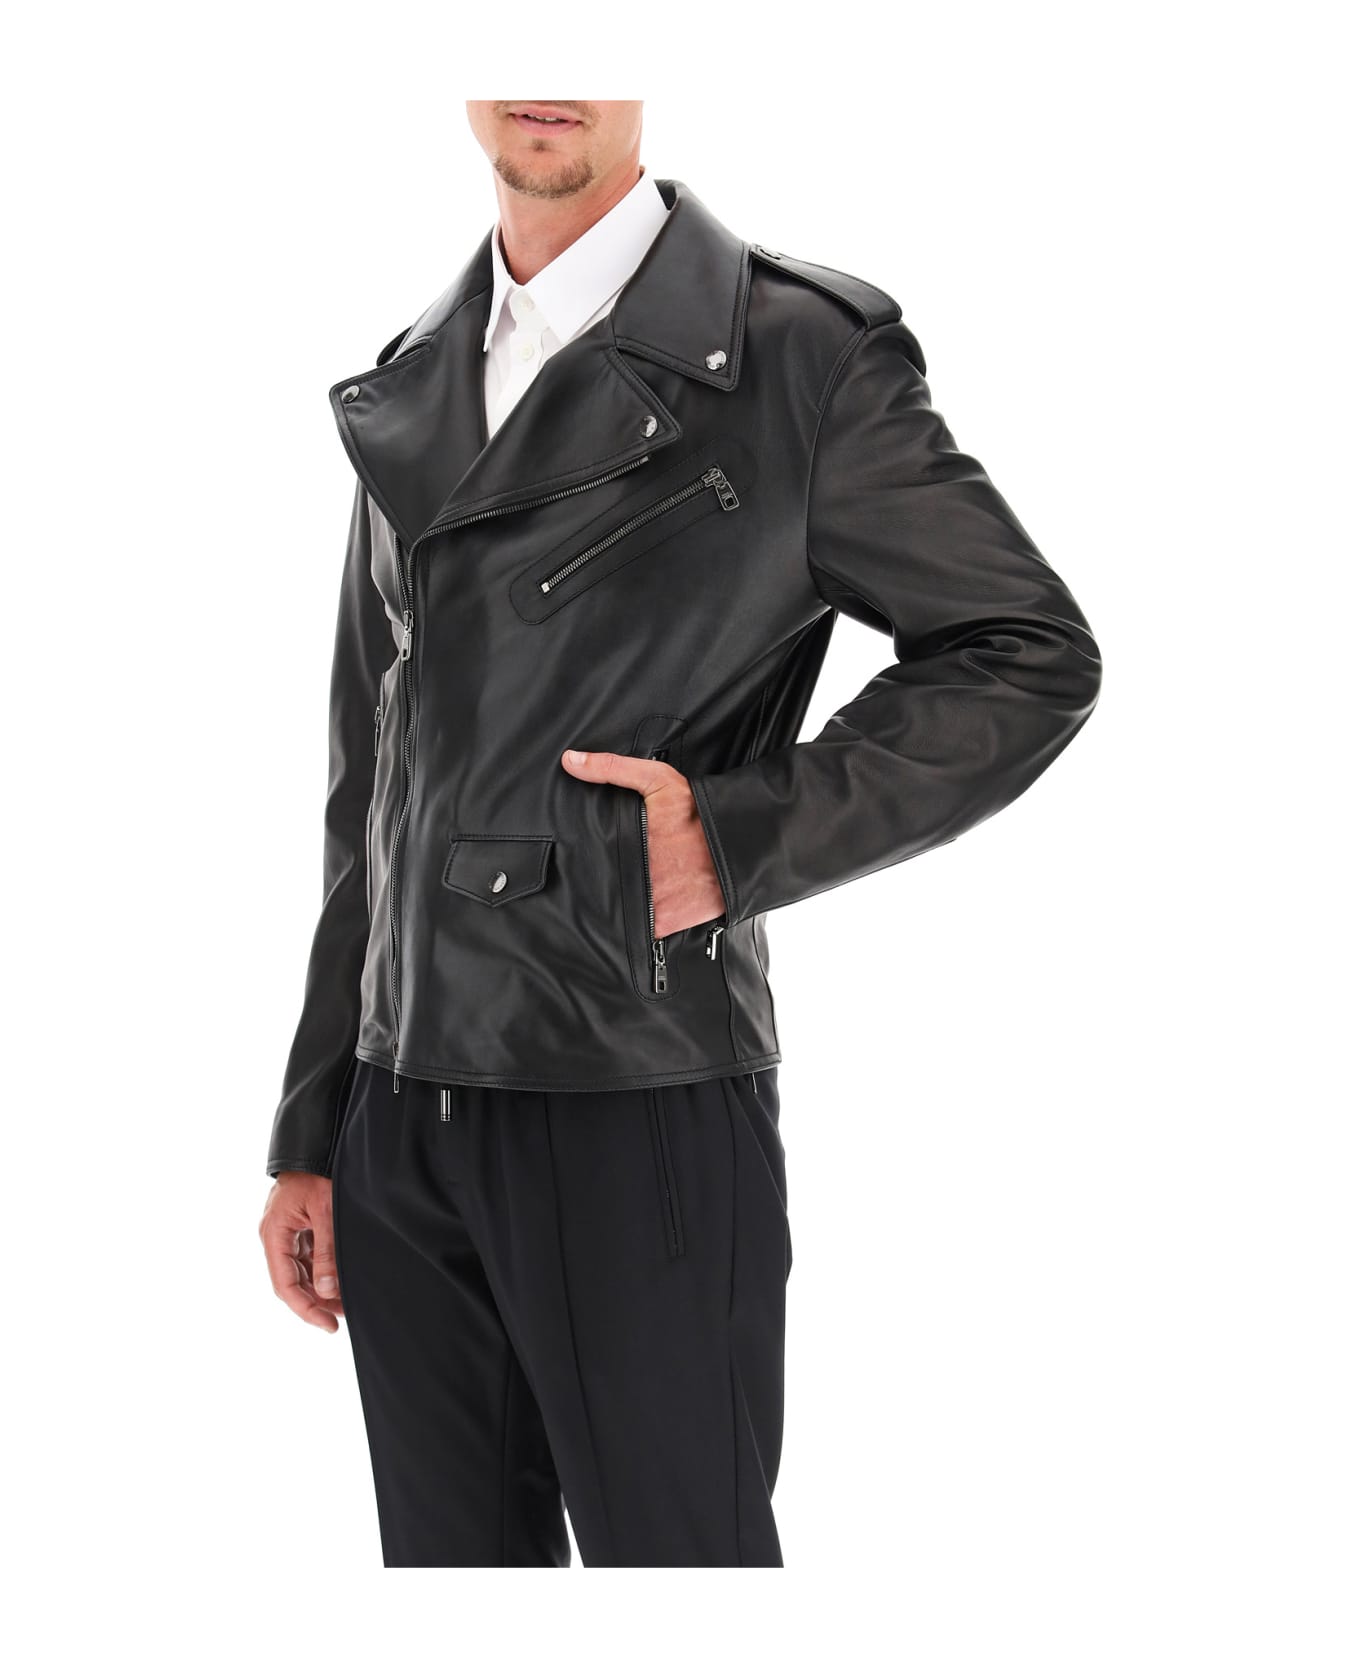 Dolce & Gabbana Leather Jacket - NERO (Black)